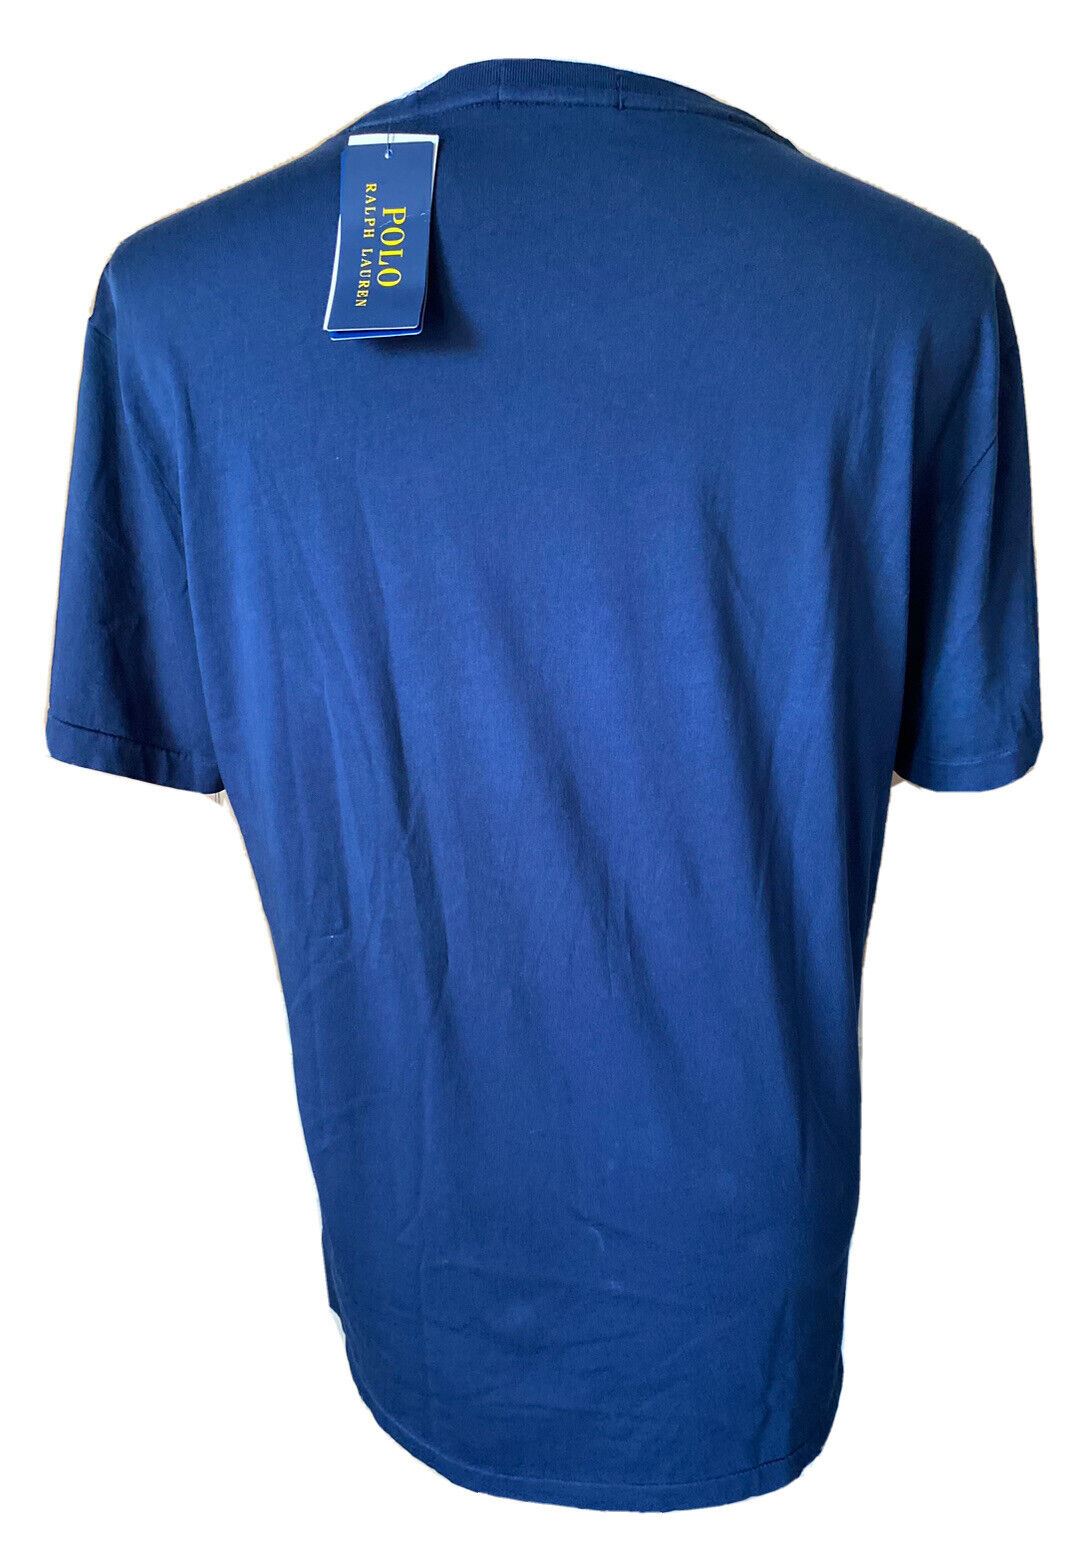 Neu mit Etikett: Polo Ralph Lauren Kurzarm-T-Shirt mit Signature-Logo, Blau, Größe L 